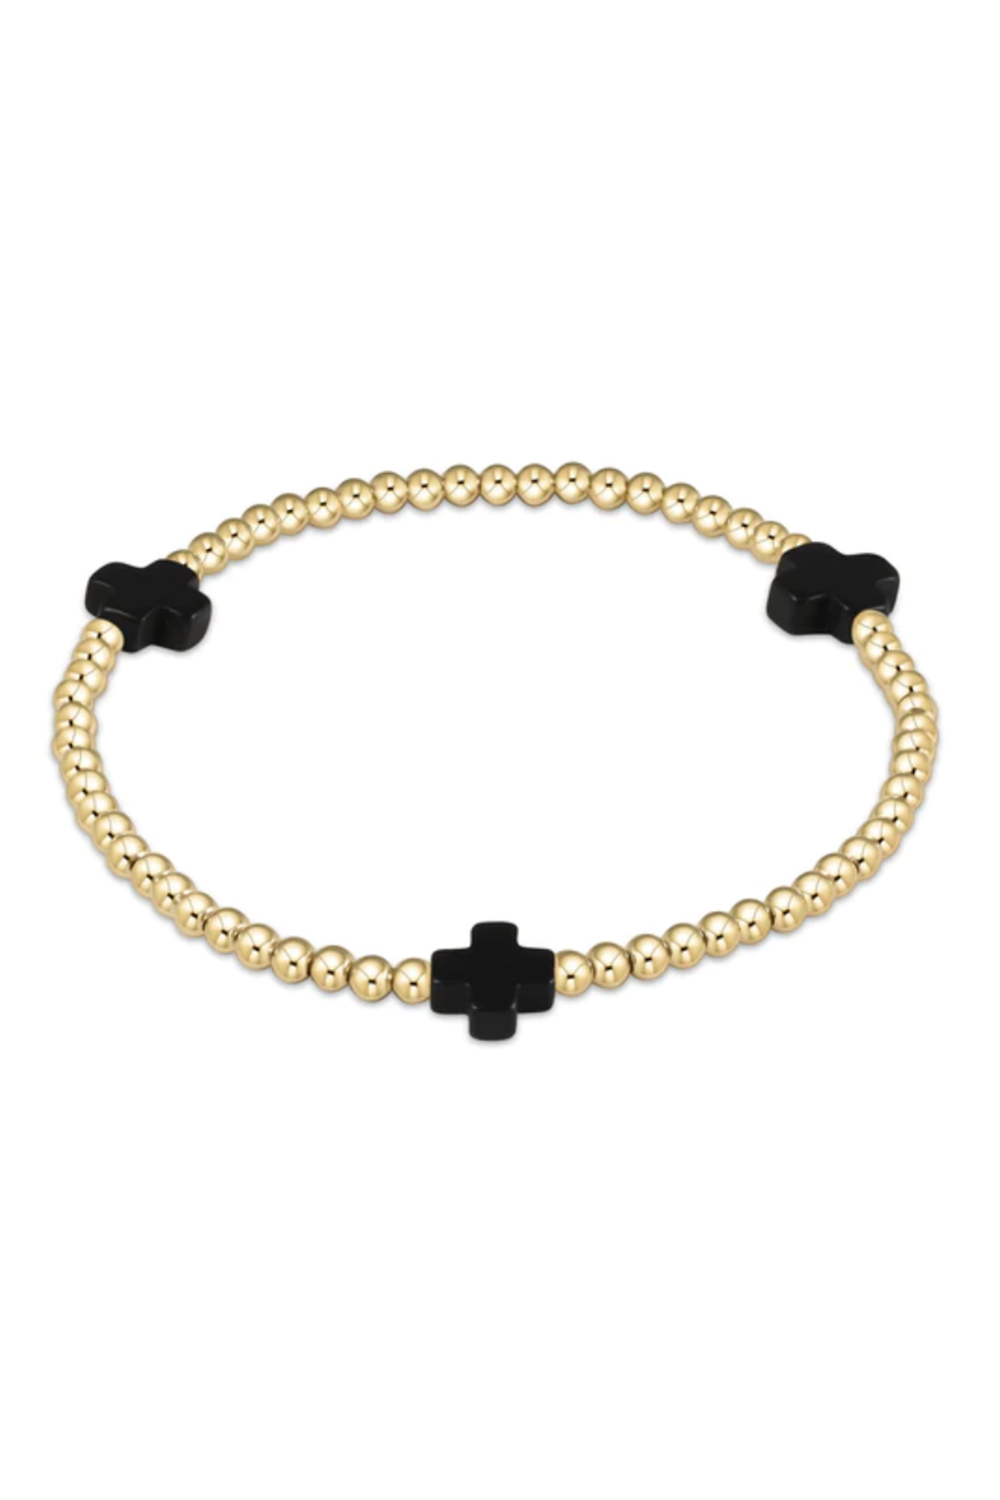 EN Gold Signature Cross Pattern Bracelet 3mm - Onyx